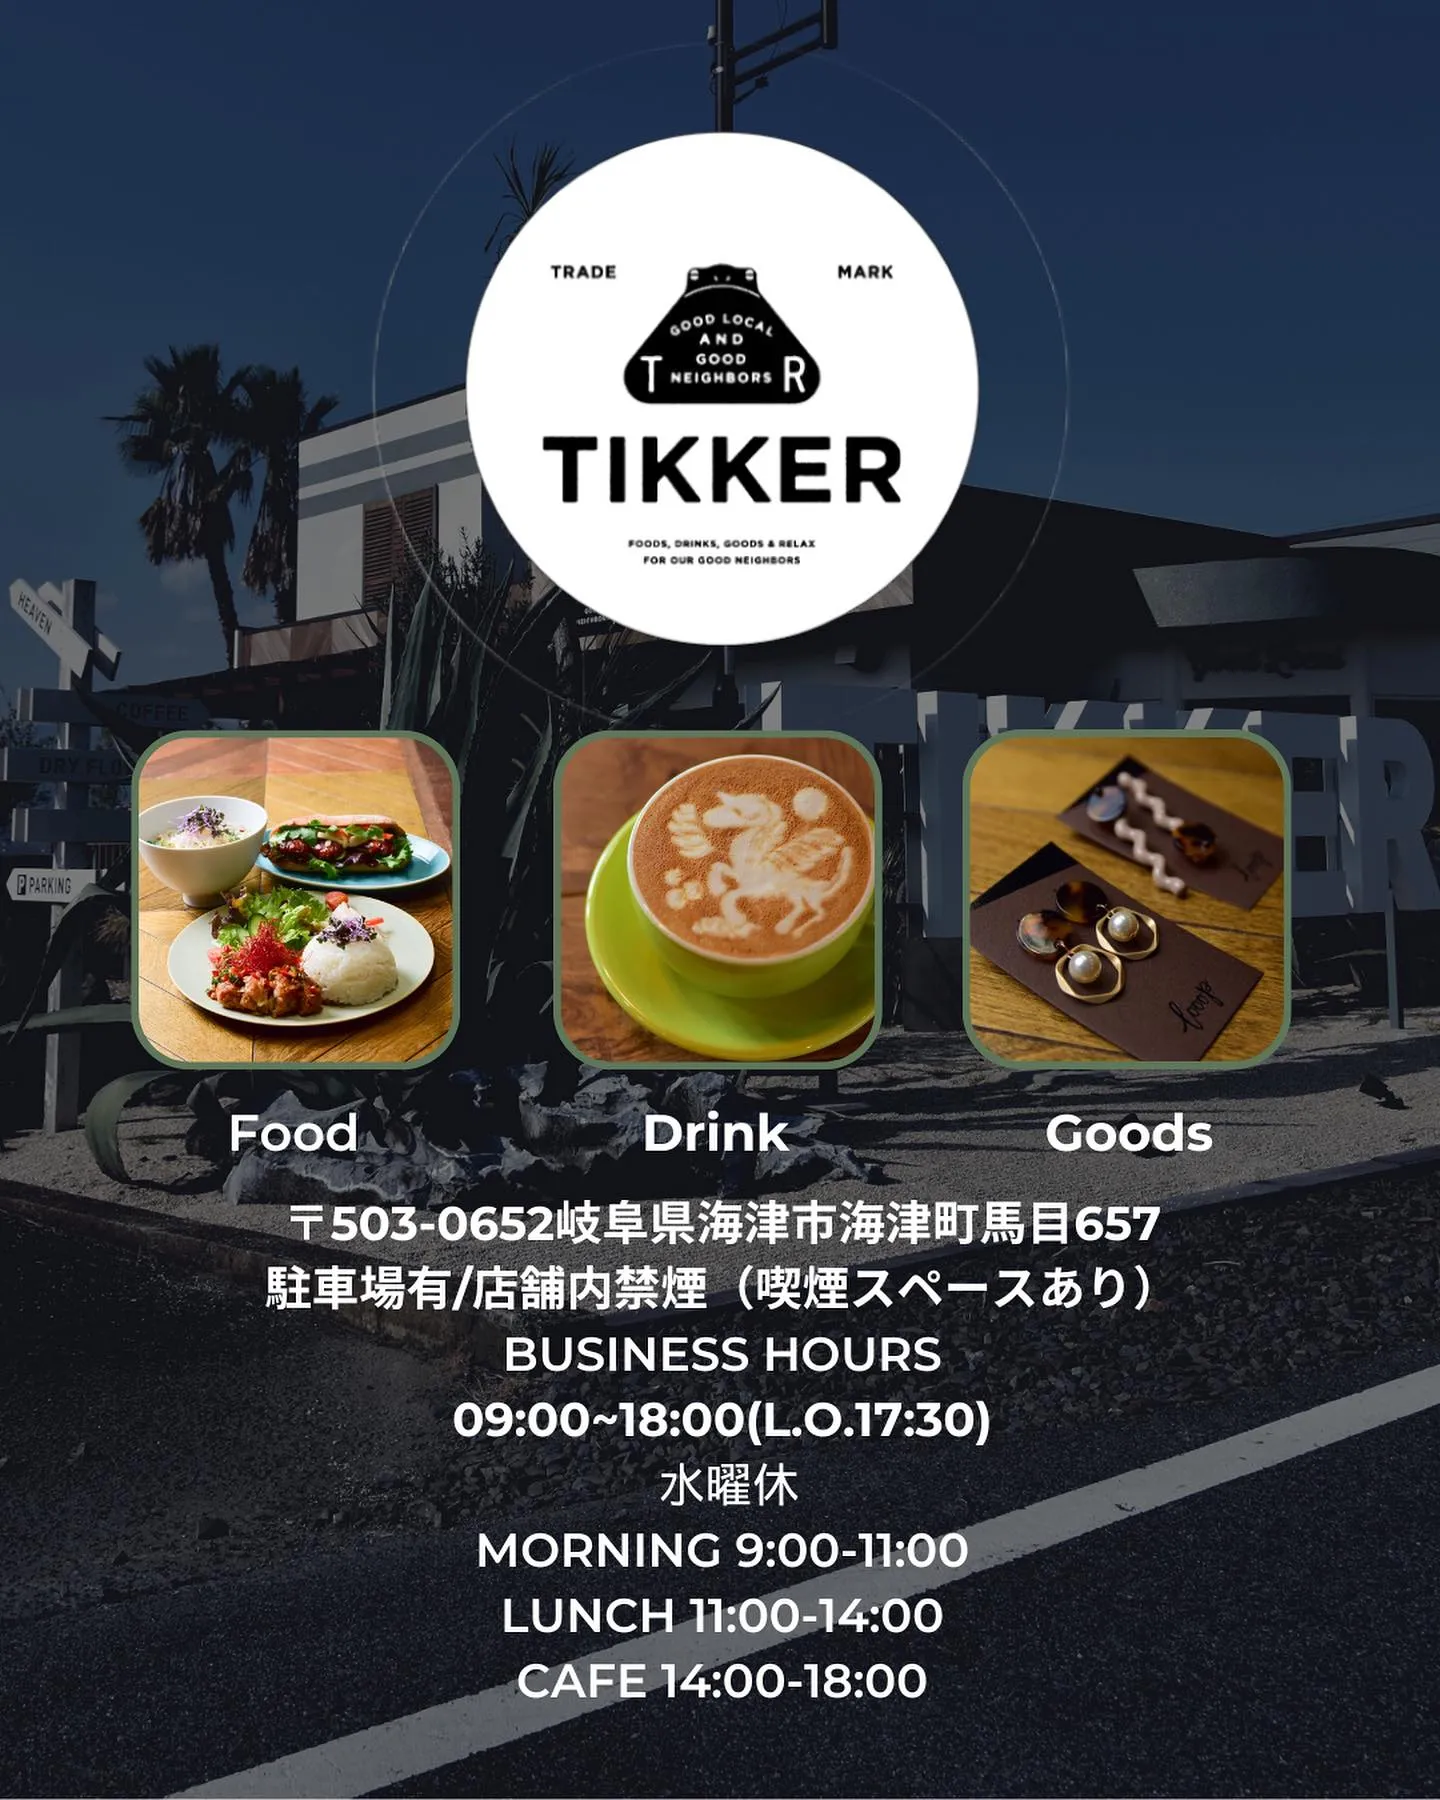 【新メニュー】TIKKER SMASH BURGER